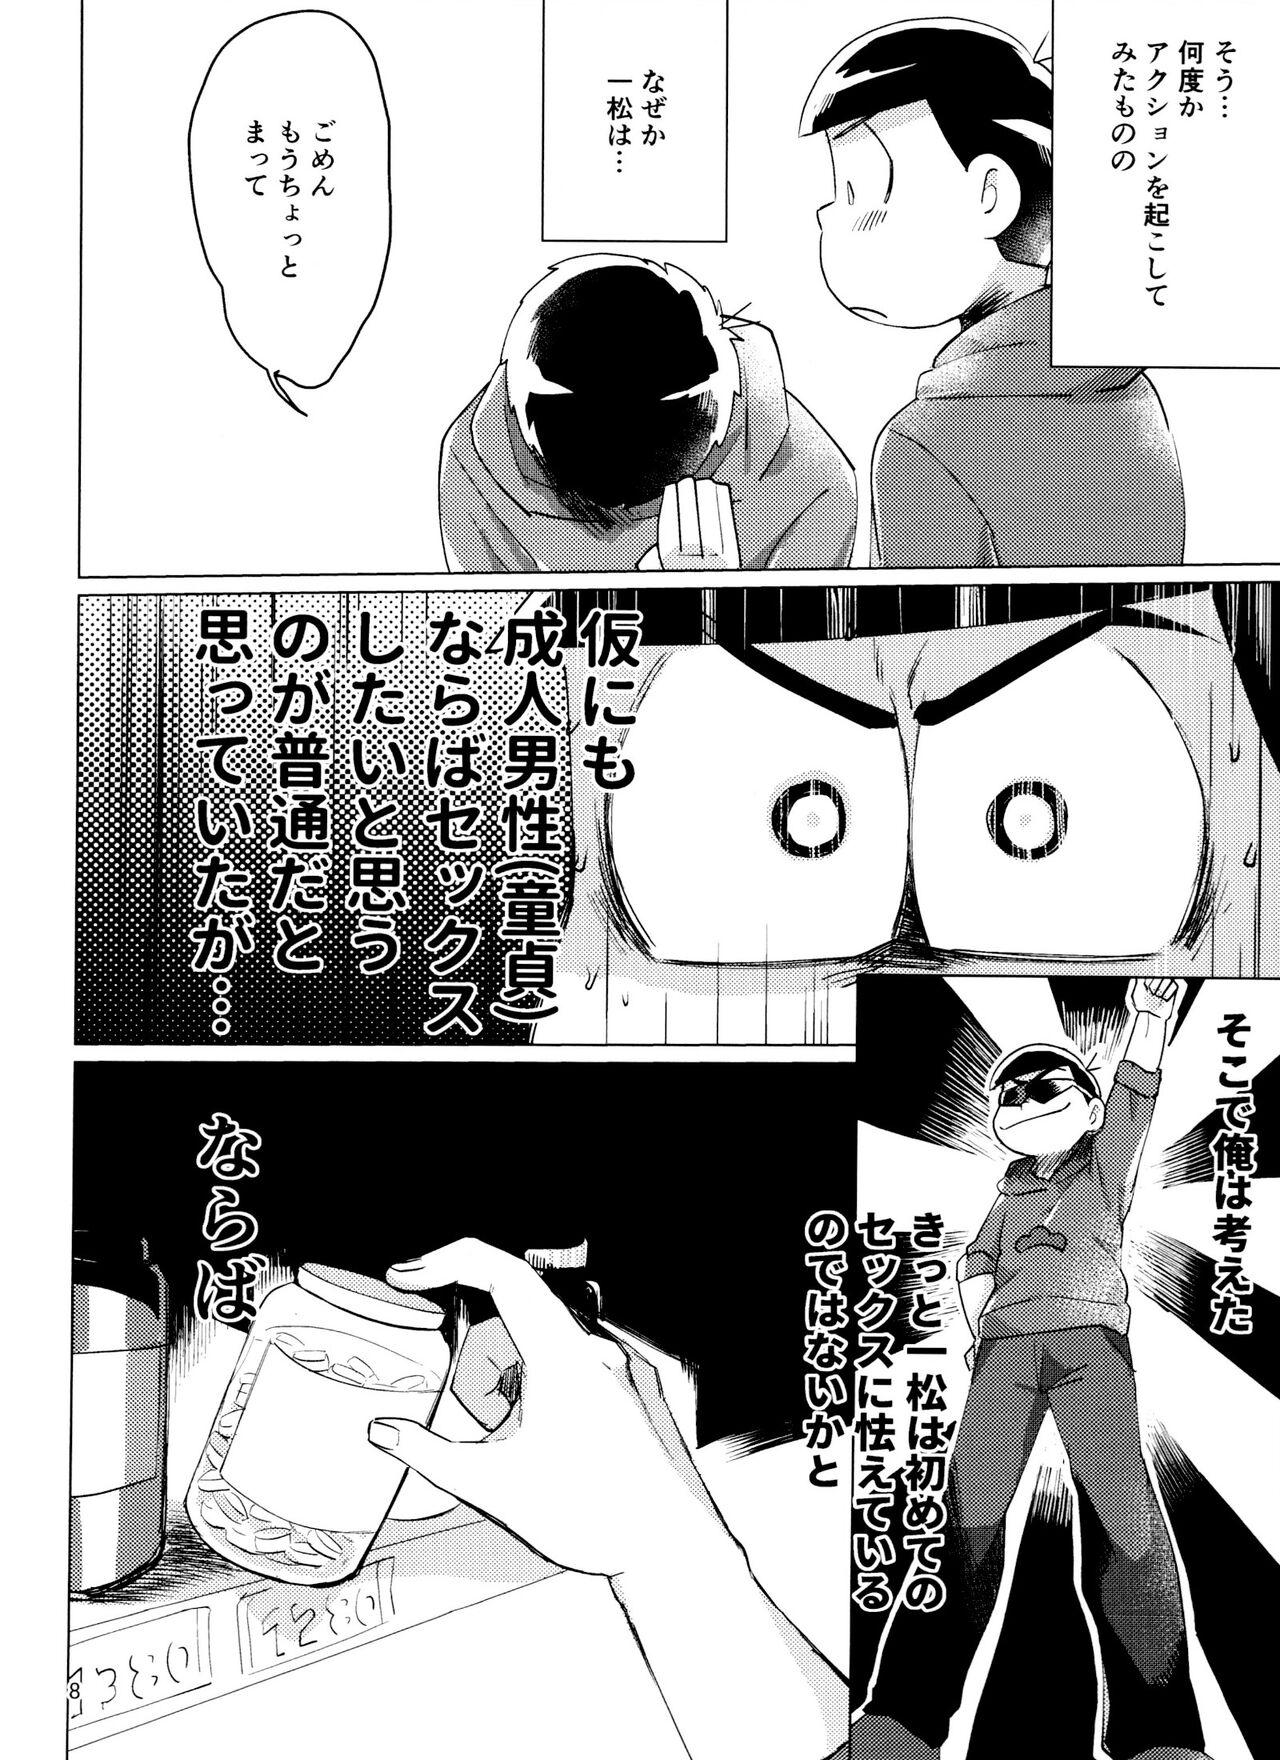 Pasivo Osomatsu-san Nekasete Kure, Burazaa!! - Osomatsu san Show - Page 8